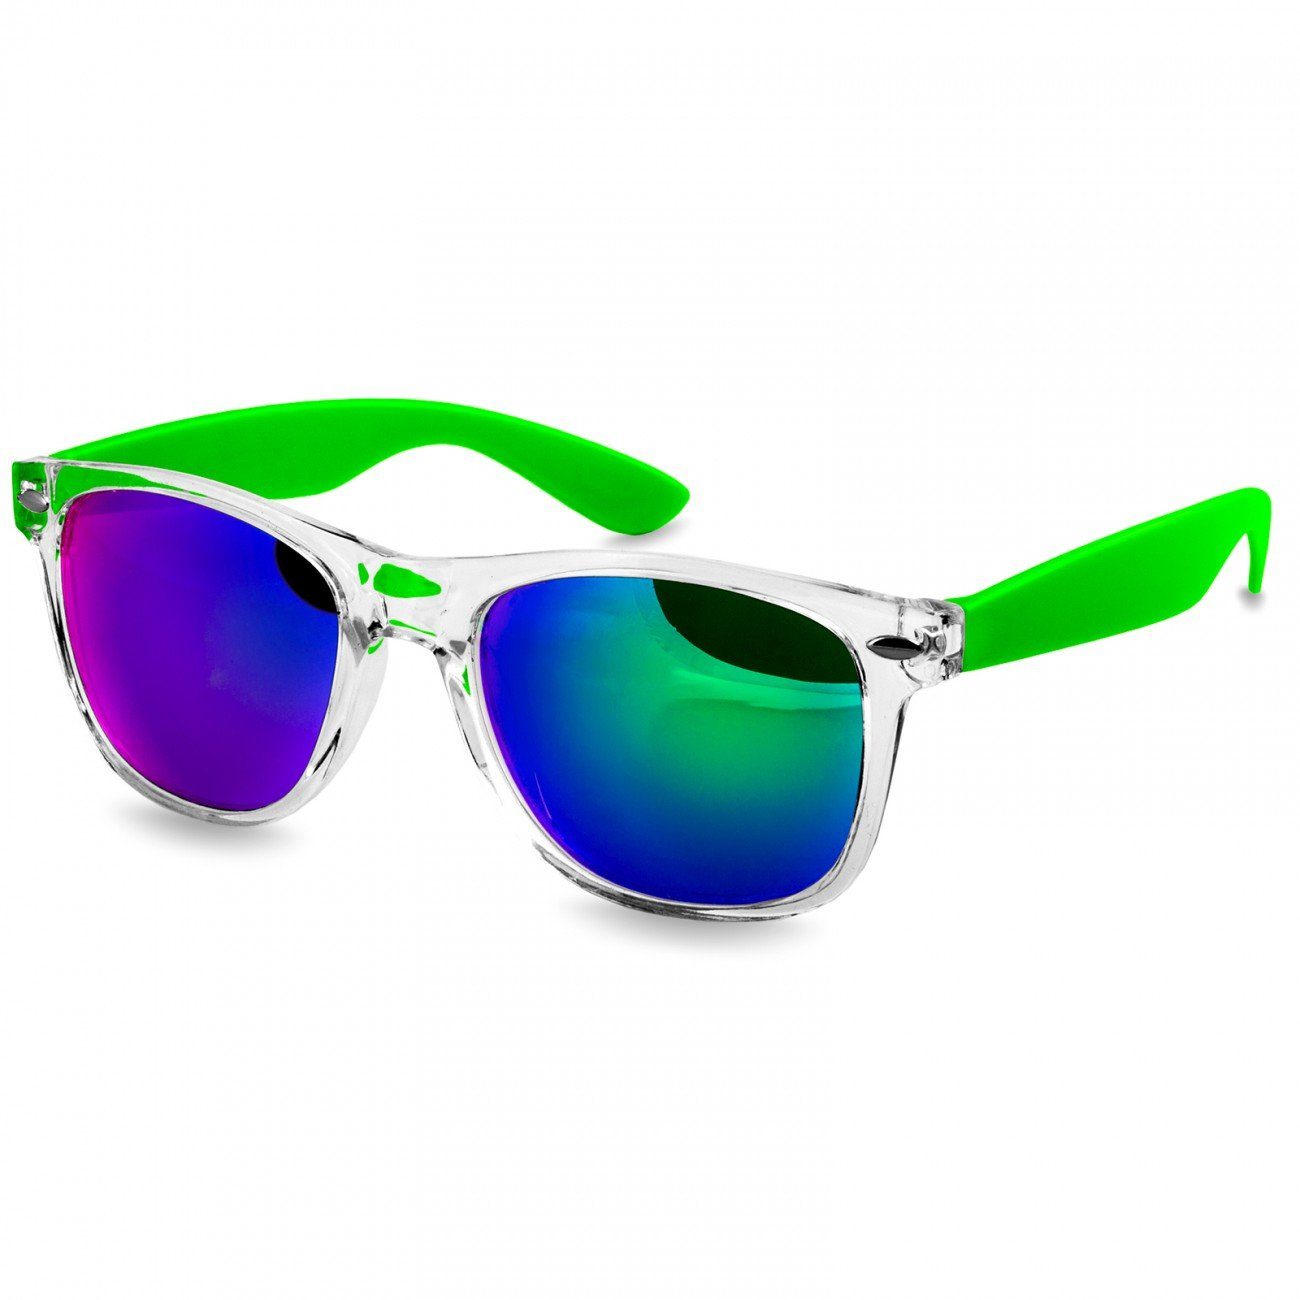 Caspar Sonnenbrille SG017 grün hellgrün Damen / RETRO Designbrille verspiegelt